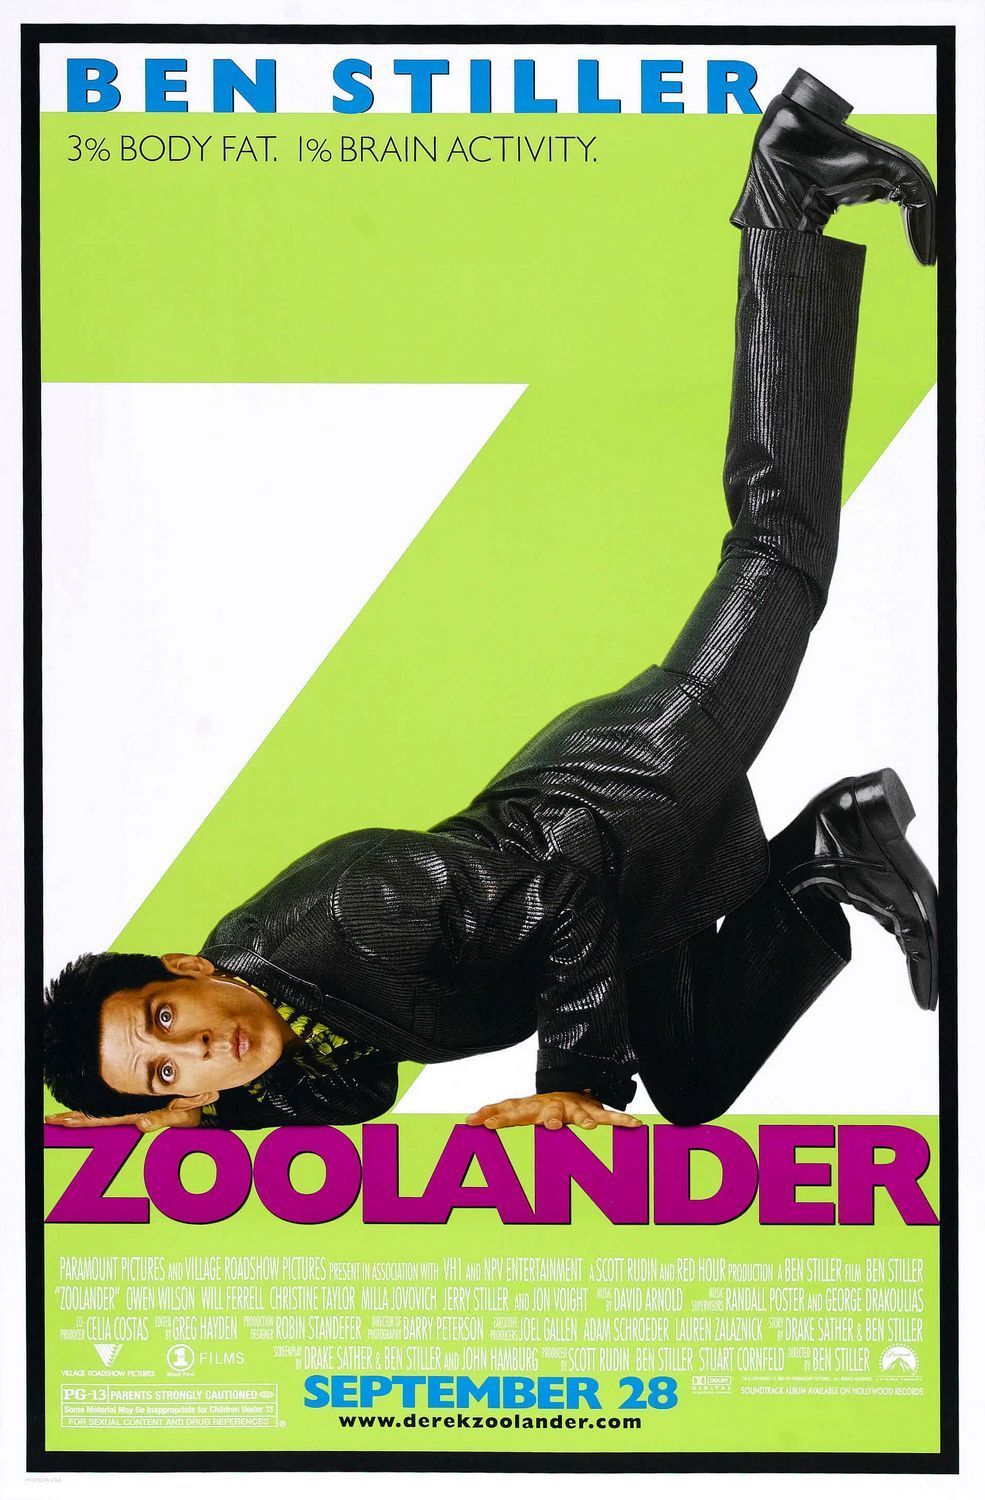 zoolander-movie-poster.jpg